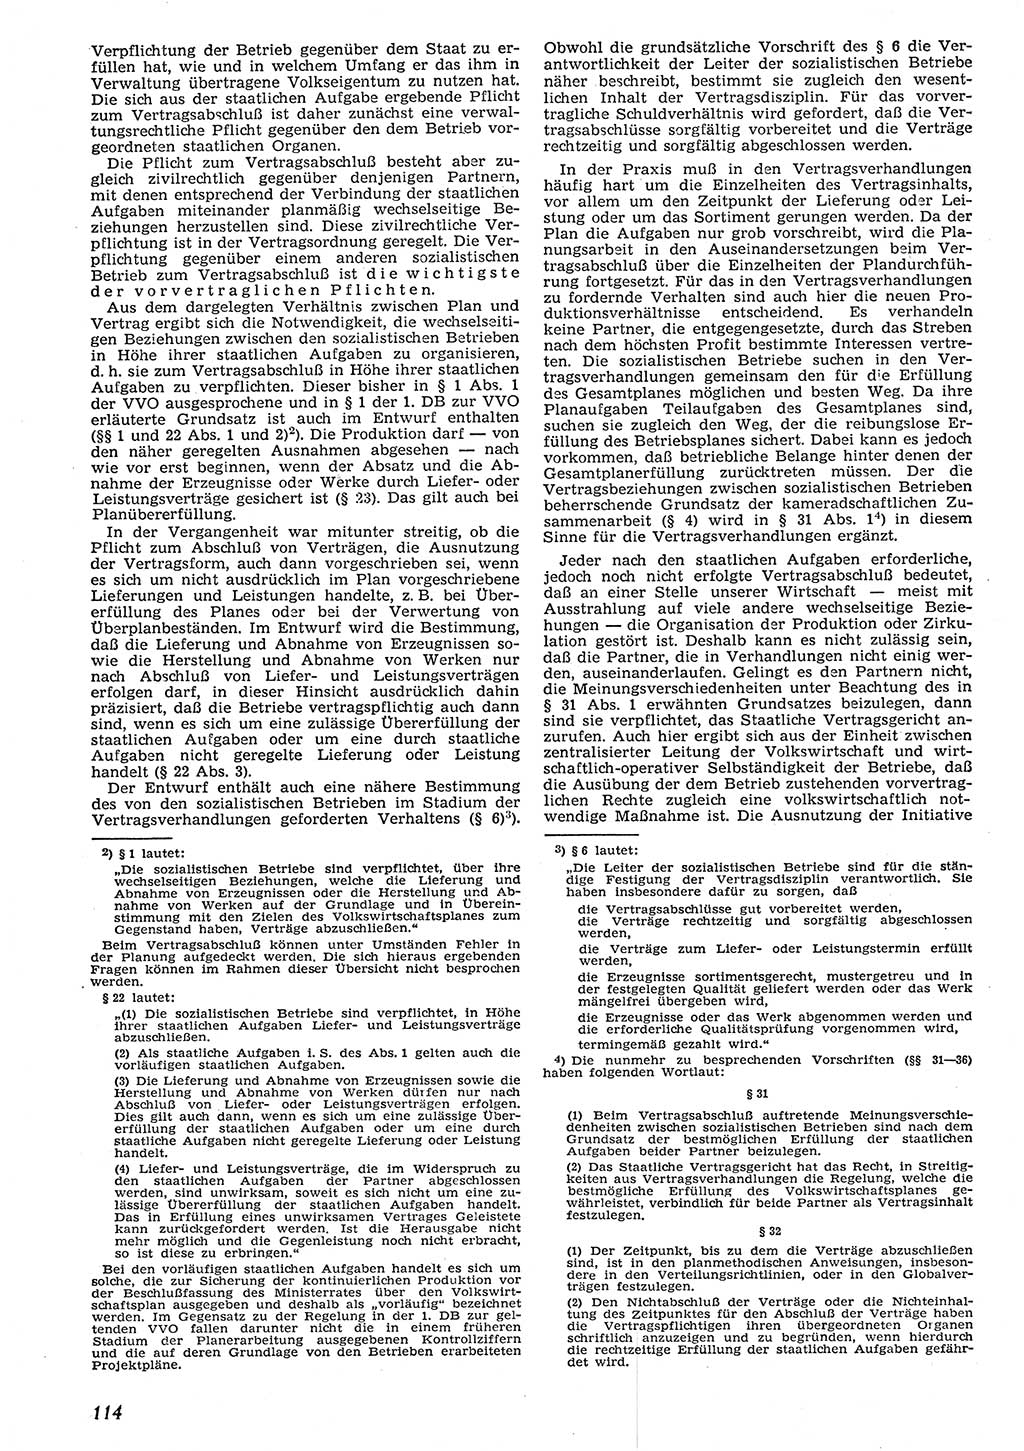 Neue Justiz (NJ), Zeitschrift für Recht und Rechtswissenschaft [Deutsche Demokratische Republik (DDR)], 10. Jahrgang 1956, Seite 114 (NJ DDR 1956, S. 114)